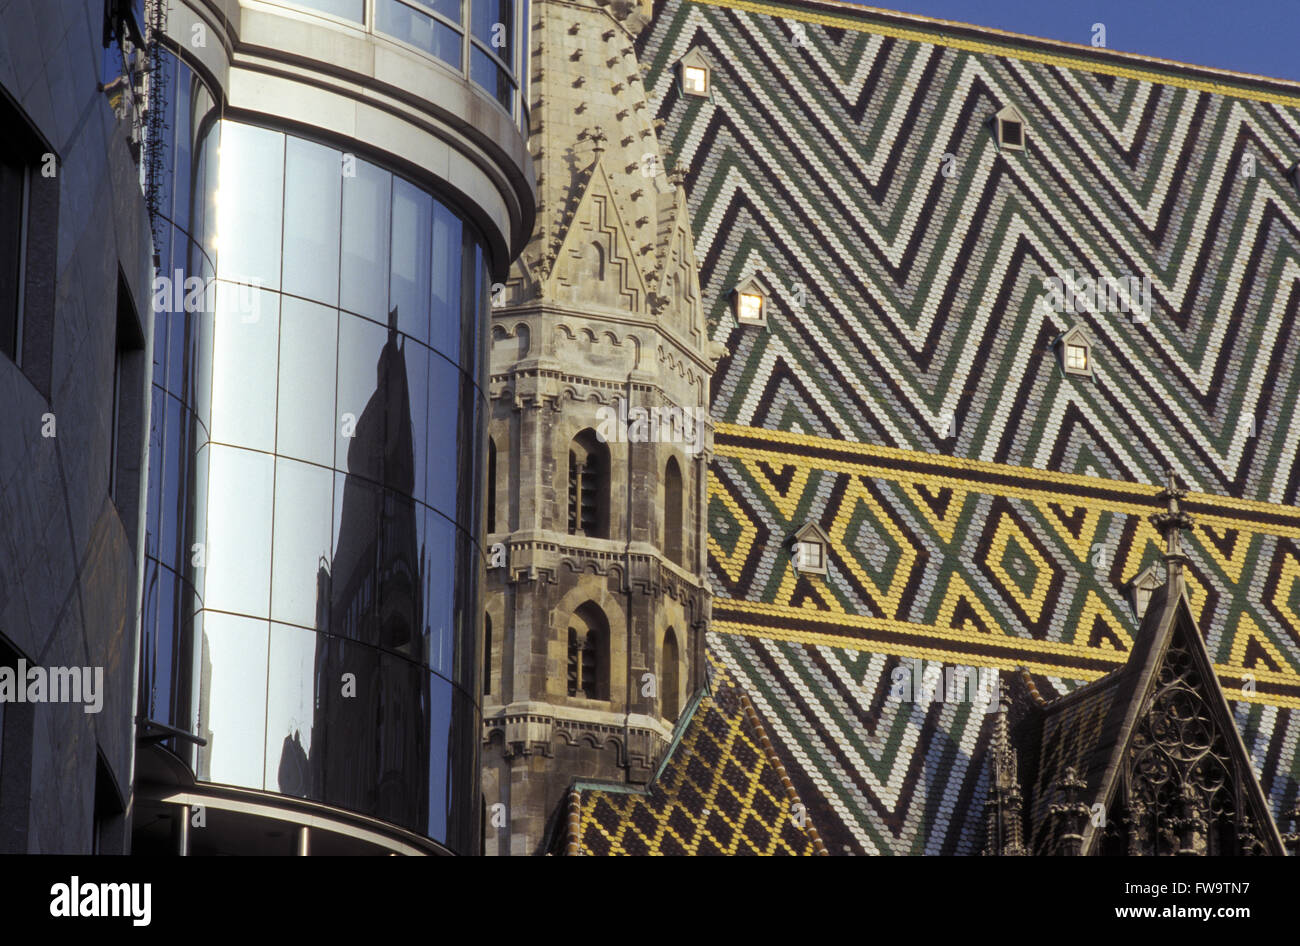 AUT, en Austria, en Viena, el techo de la Catedral Stephans, a la izquierda de la fachada de vidrio de la Haas house. AUT, Oesterreich, Wien, Da Foto de stock